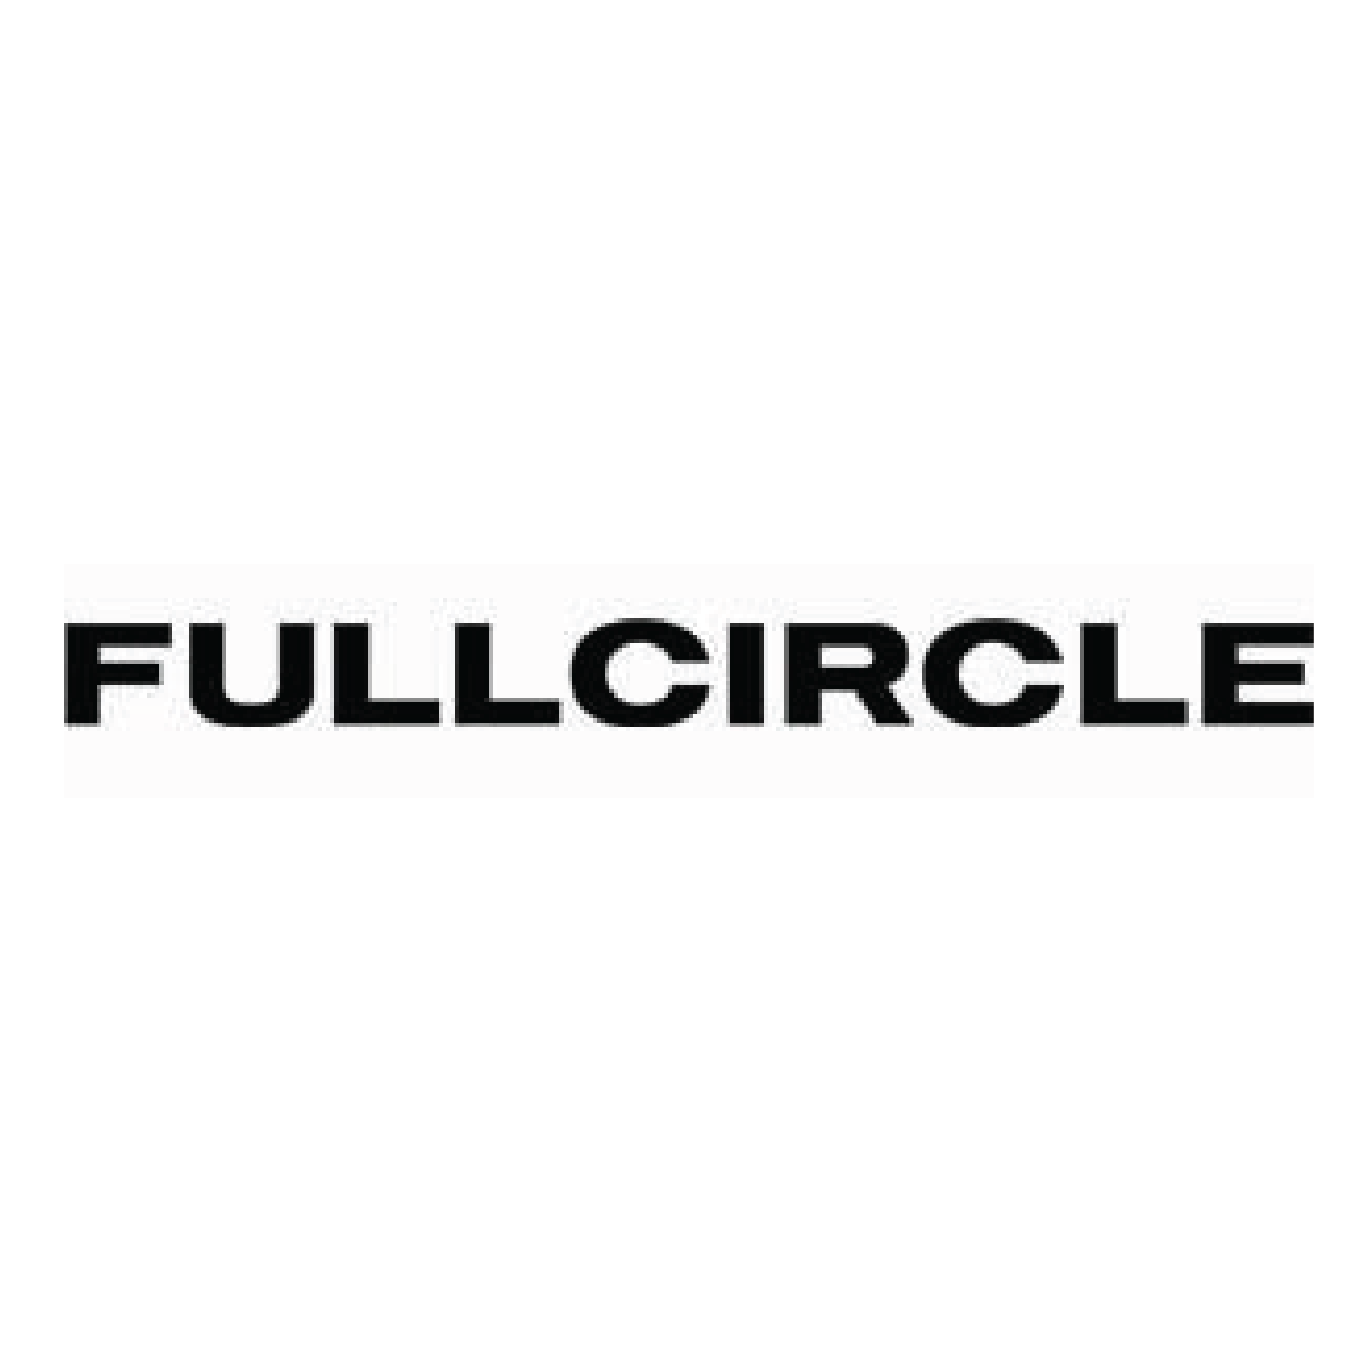 fullcircle_logo.png